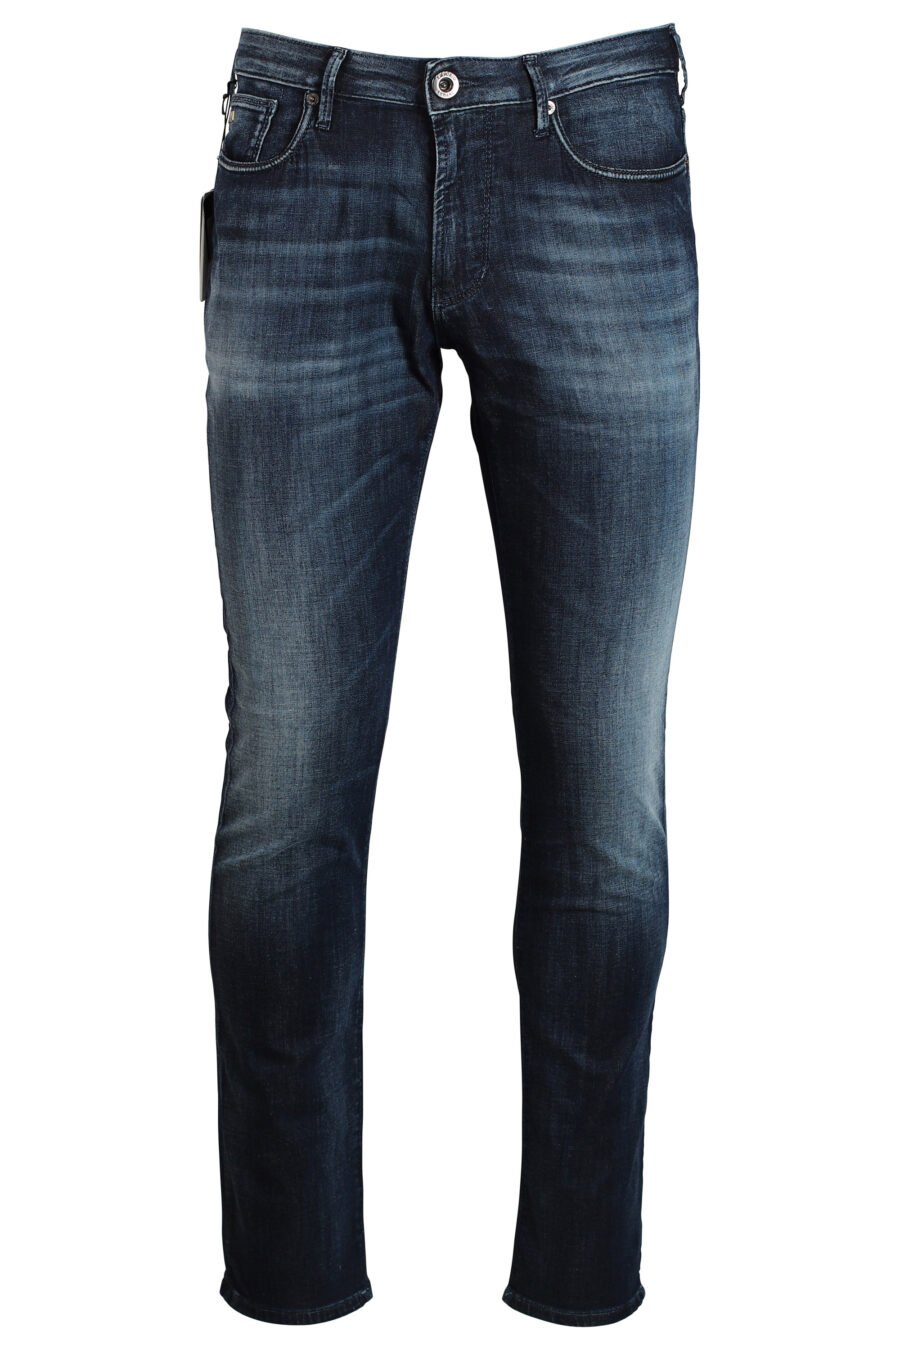 Pantalon en denim bleu semi-usé avec mini-logo en métal - 8056787569959